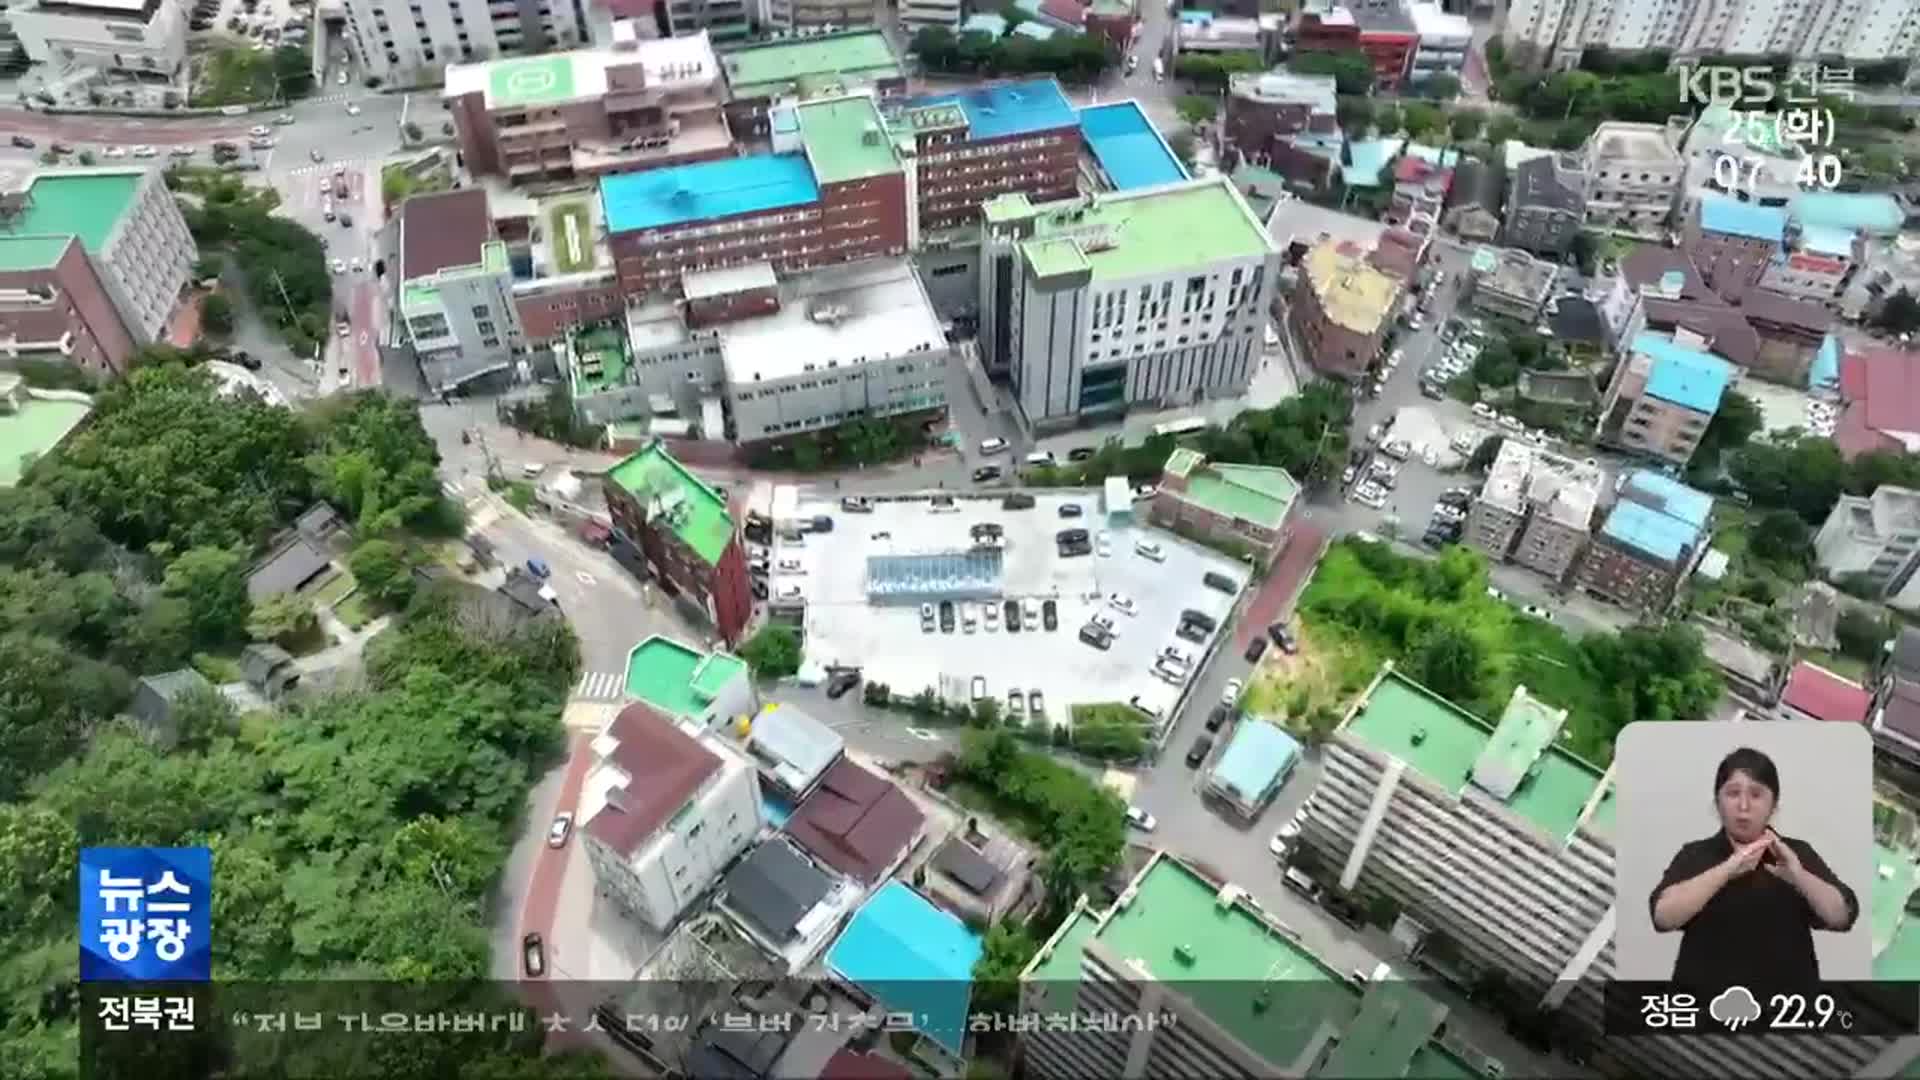 전북권 통합재활병원, 공사비 증가로 좌초위기